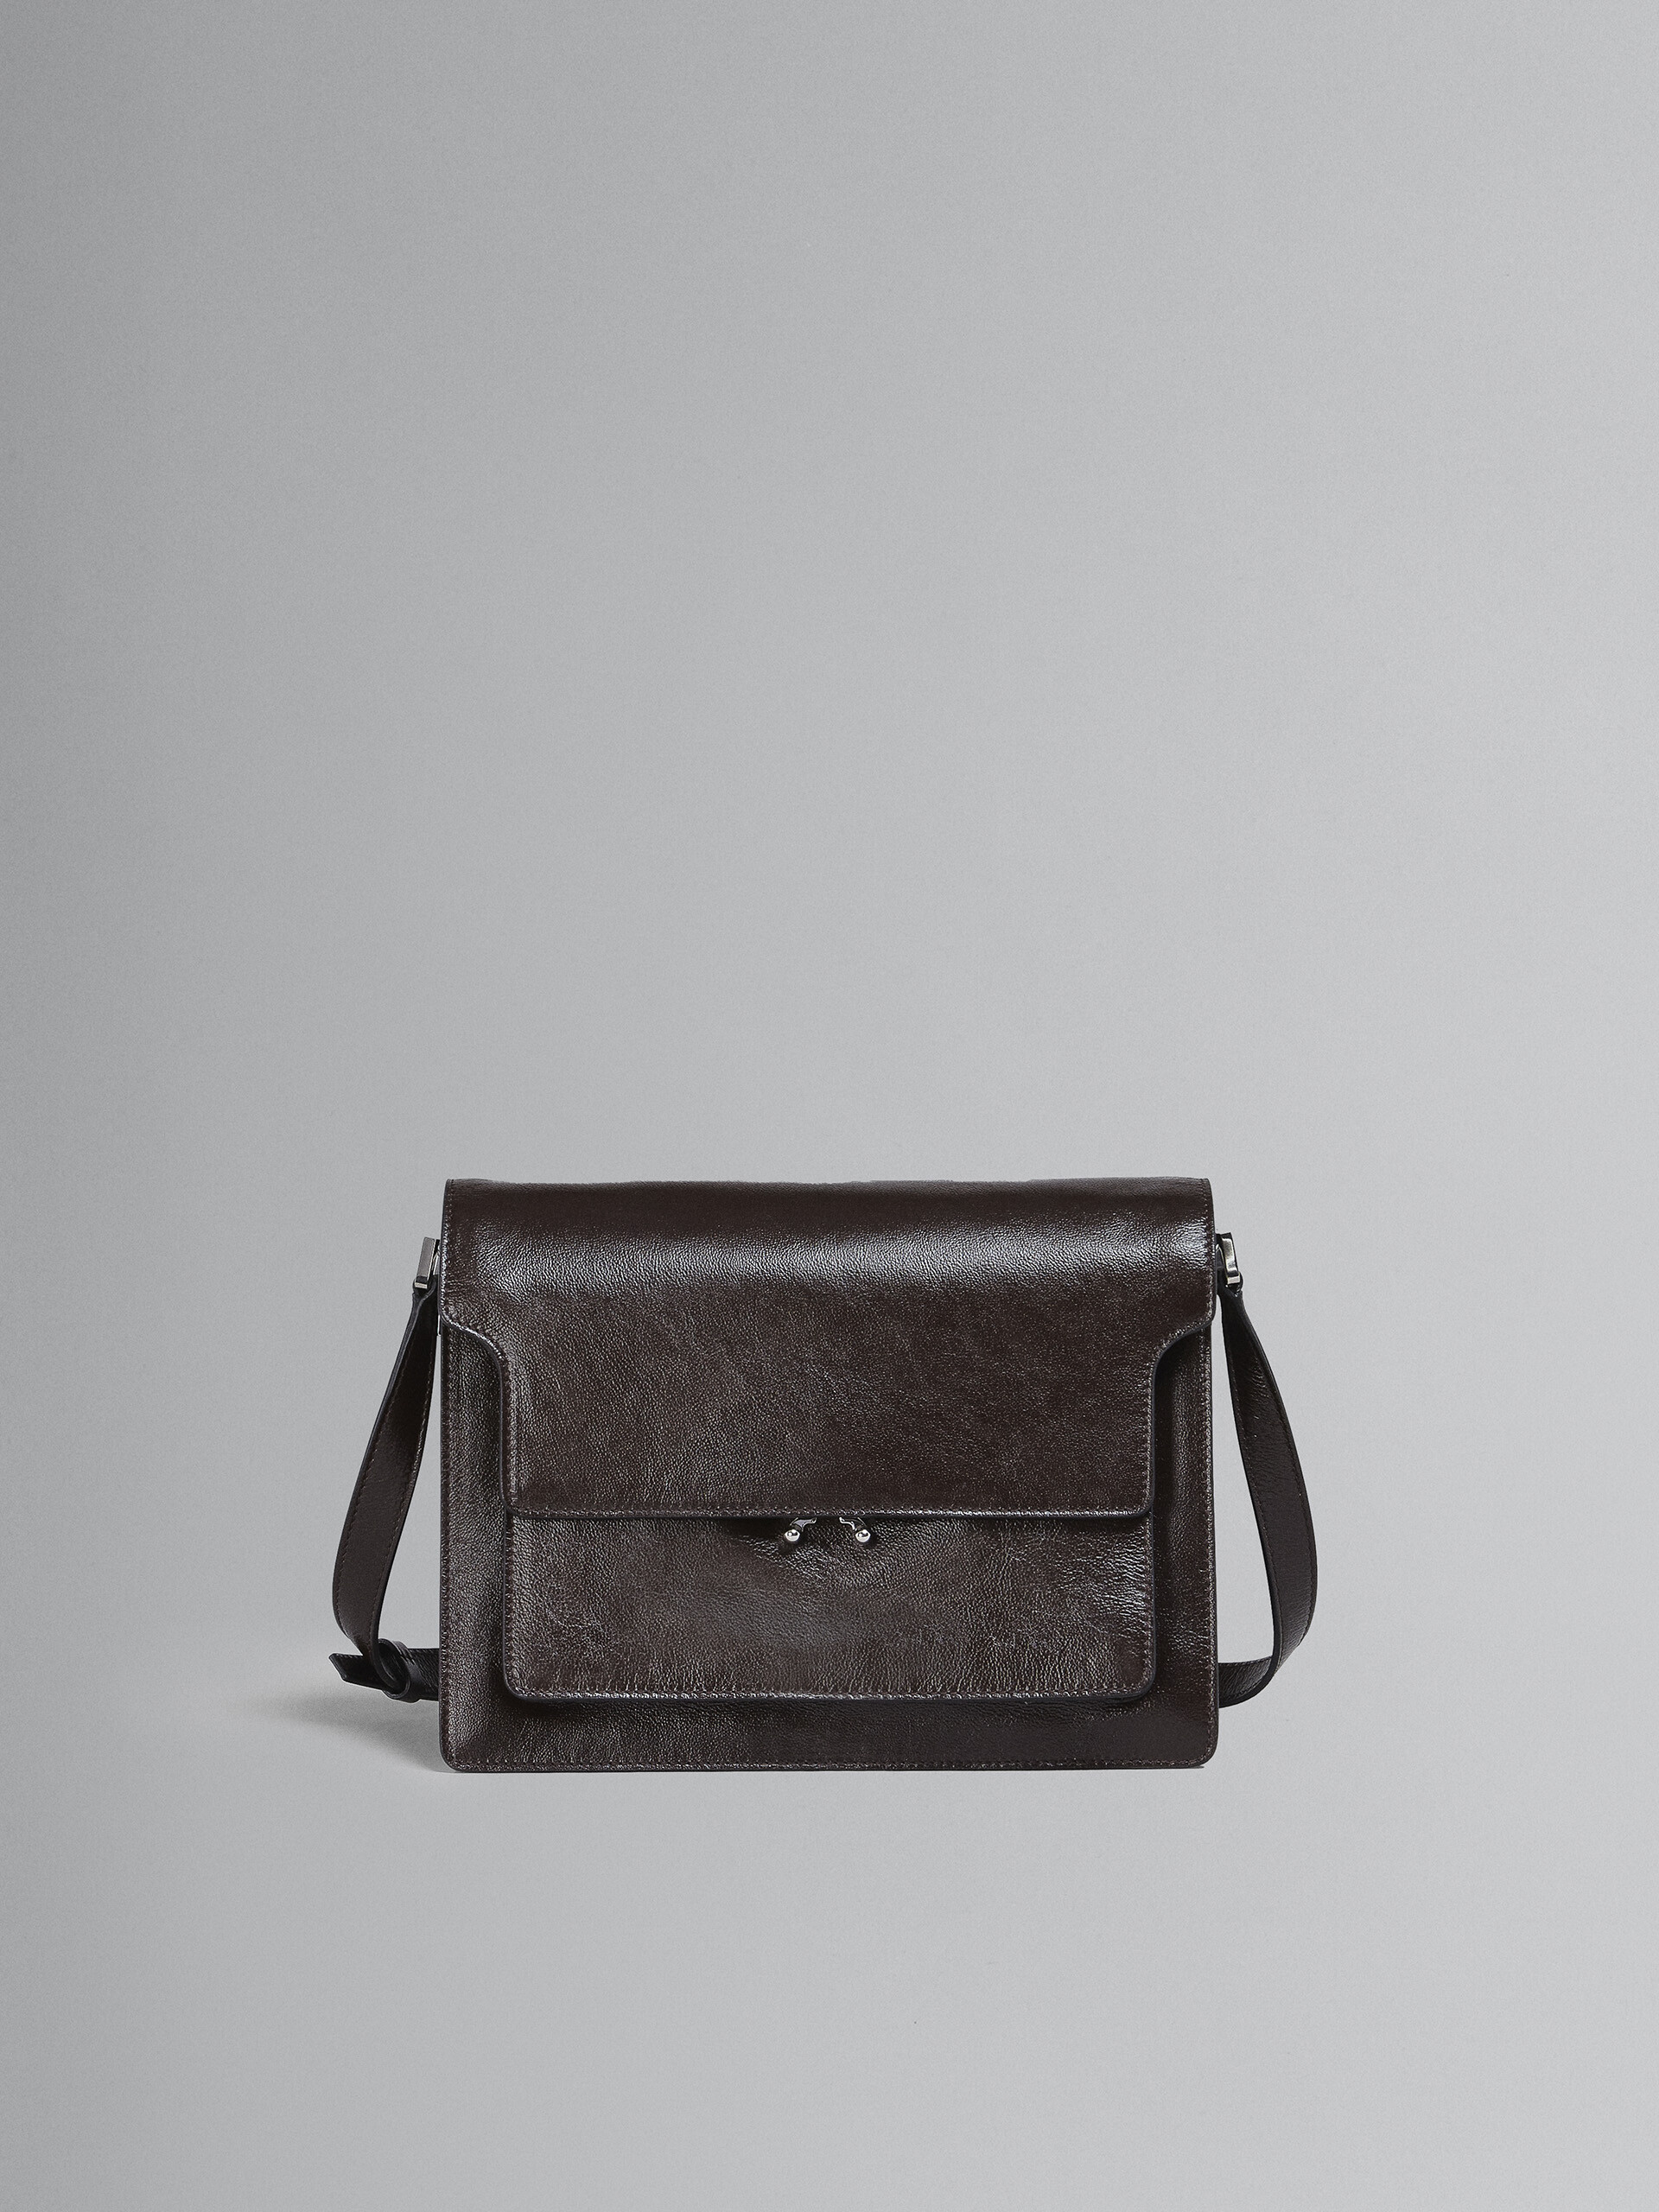 Trunk Soft Bag Grande in pelle nera - Borse a spalla - Image 1